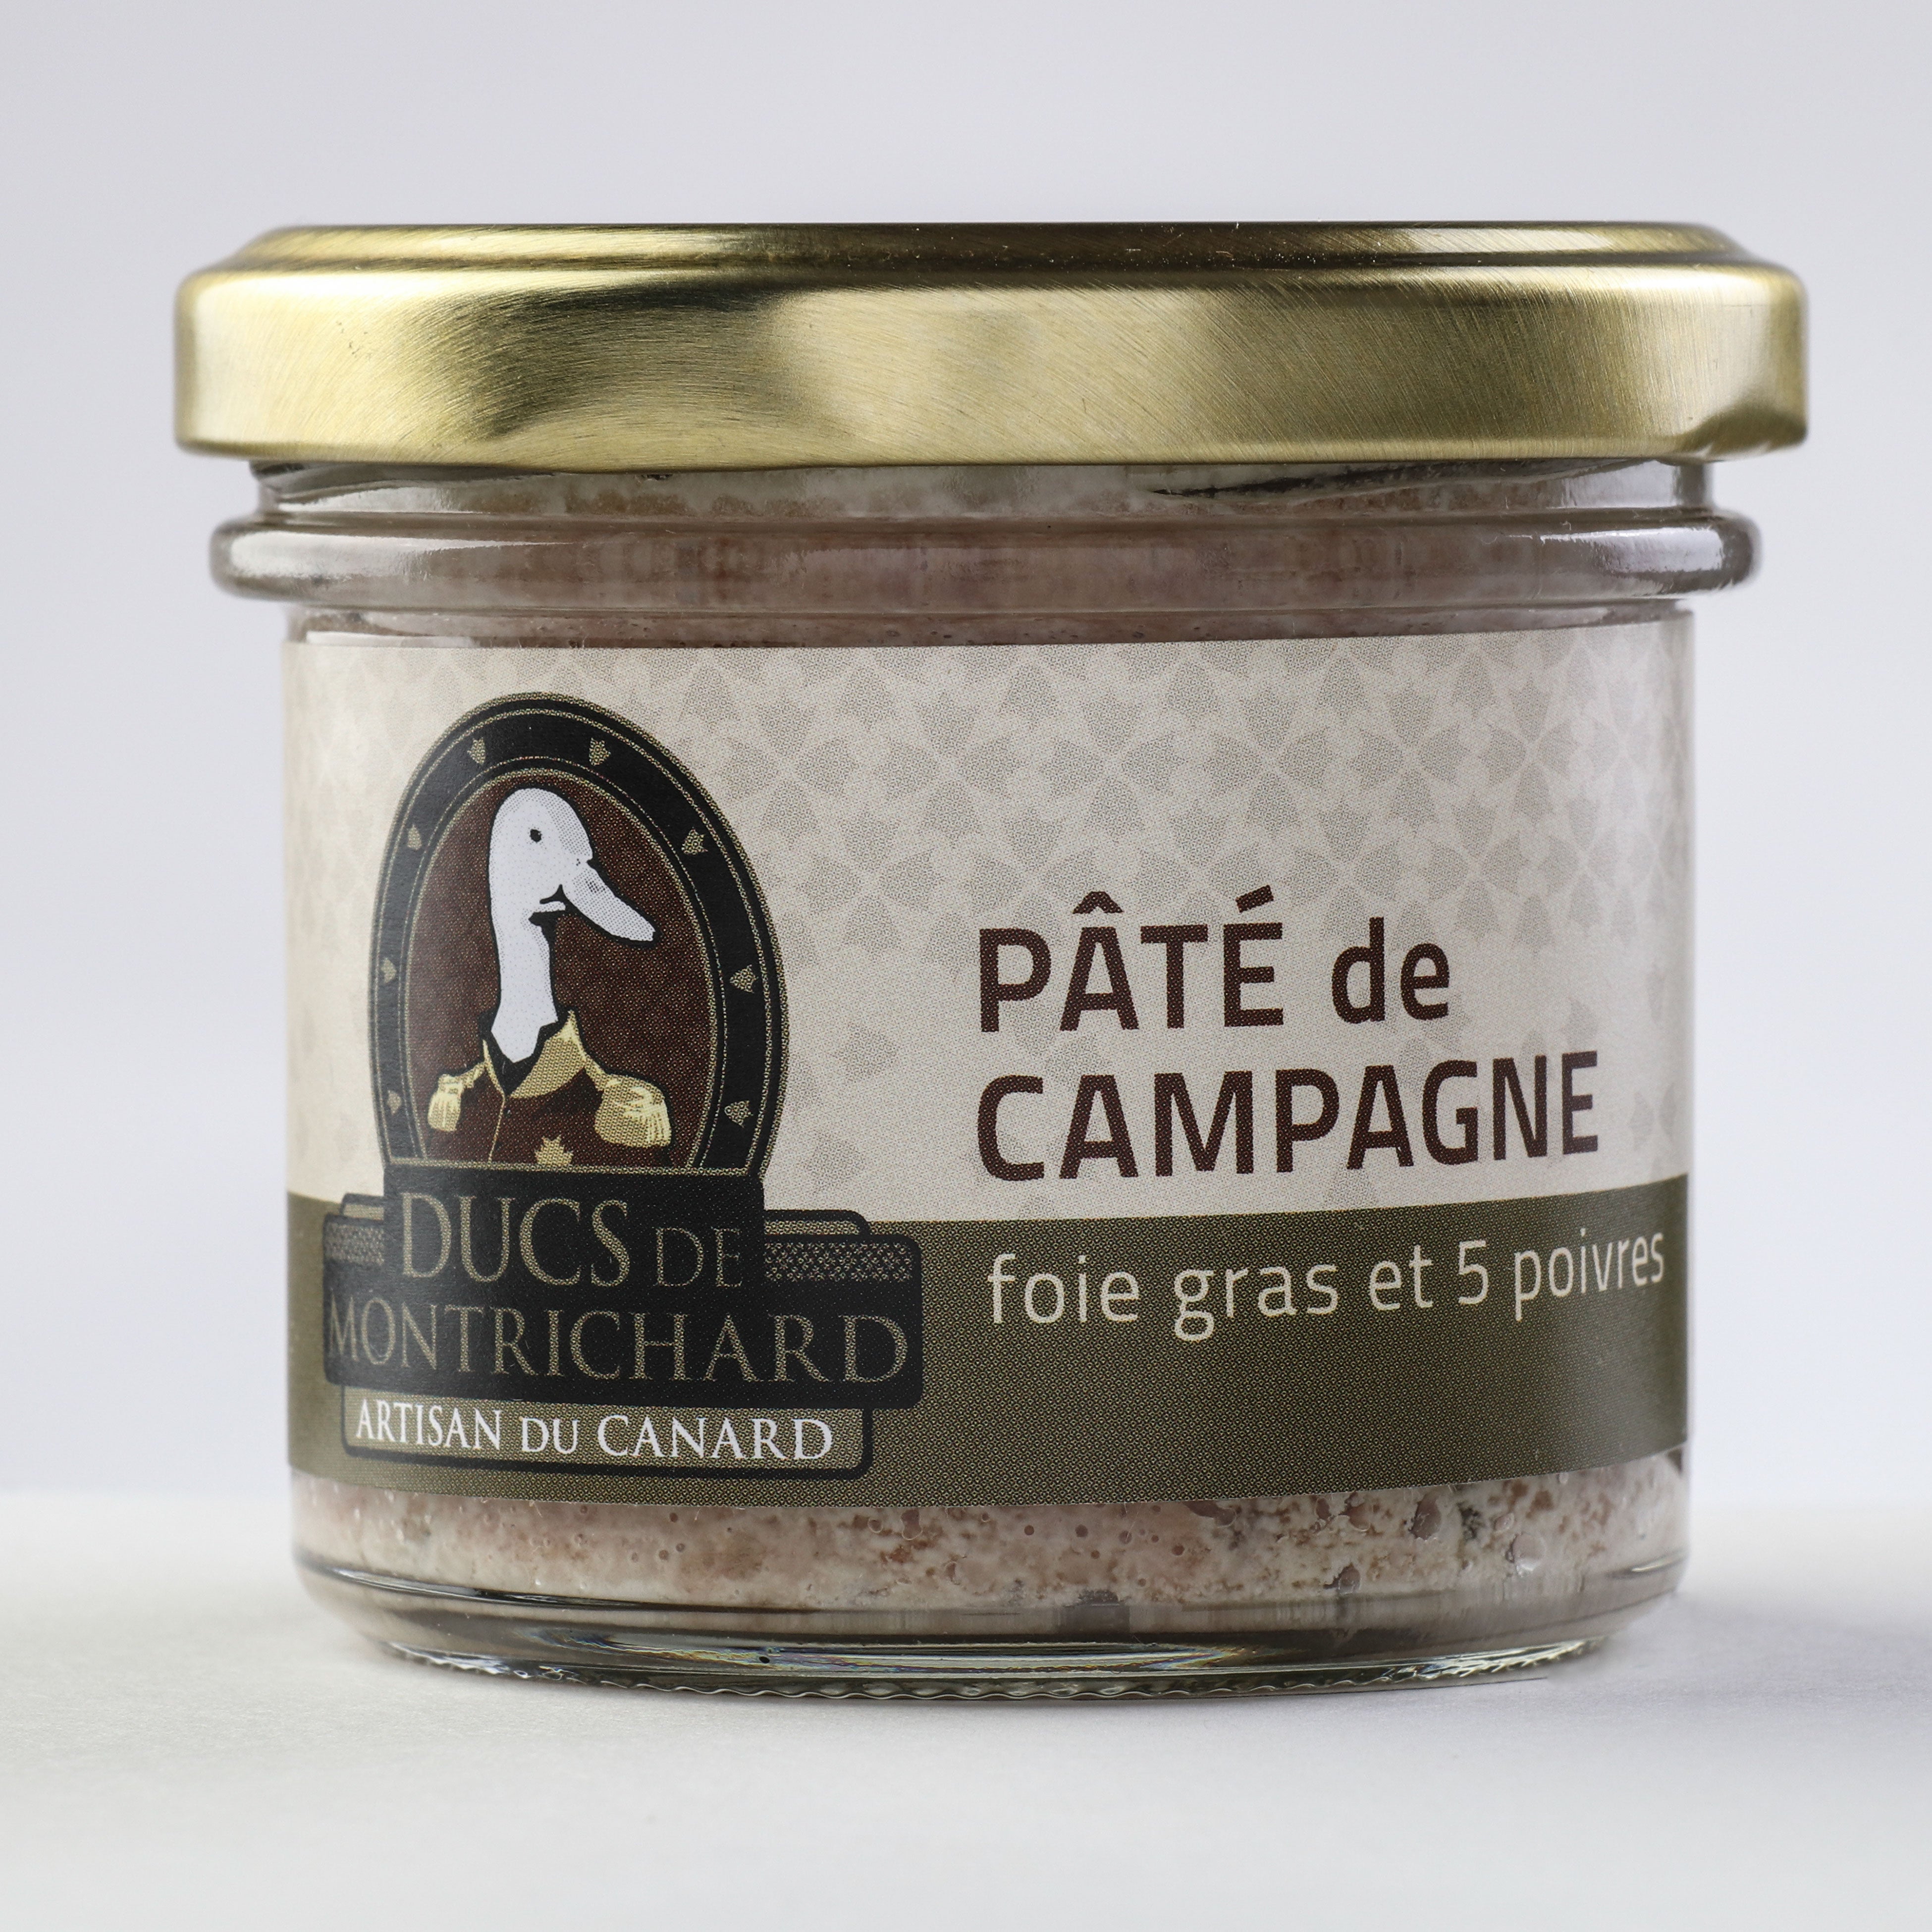 Pâté de campagne foie gras et 5 poivres -Ducs de Montrichard